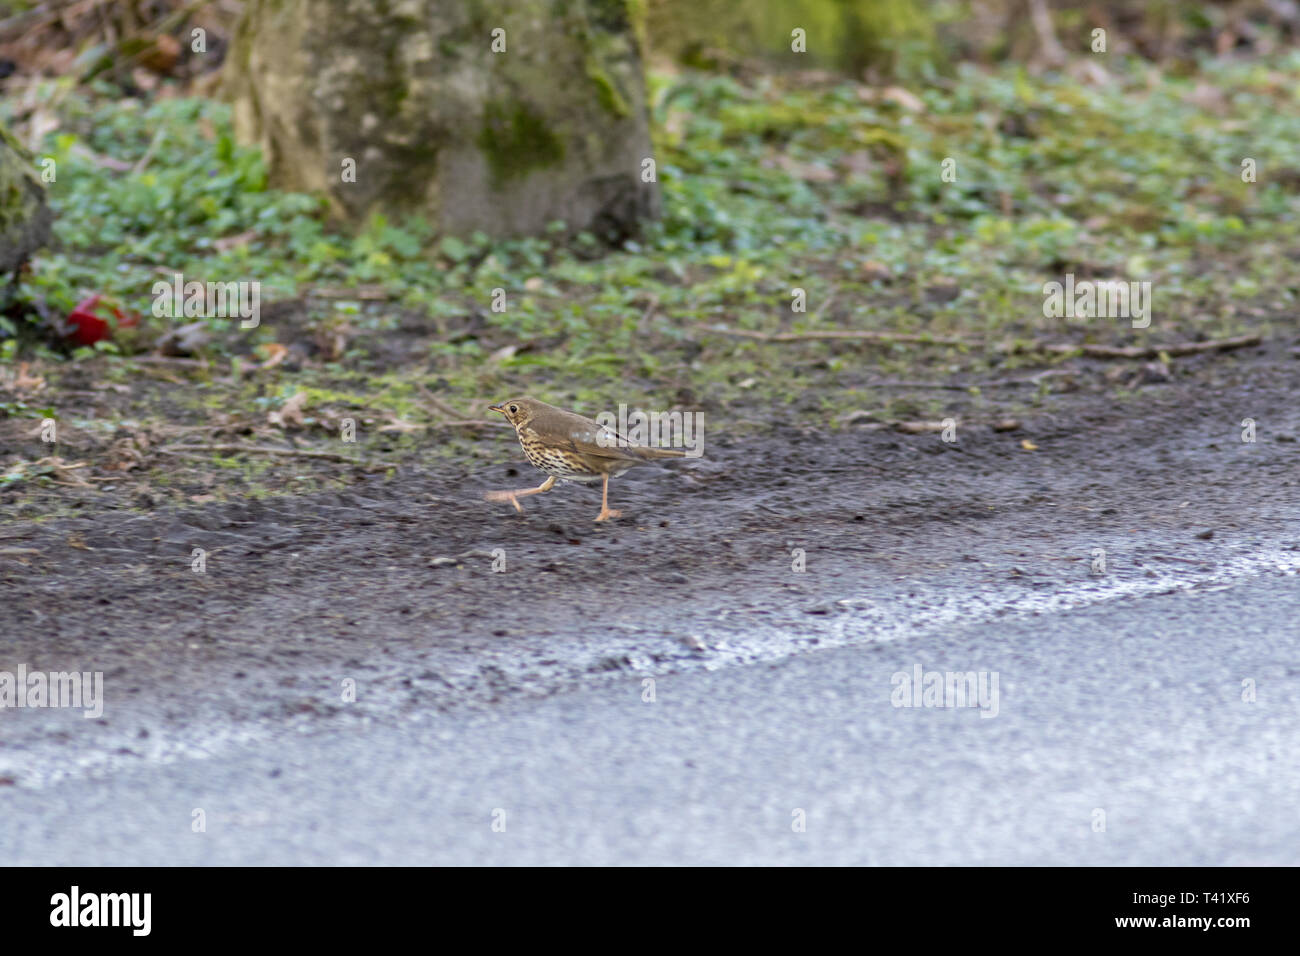 Song Thrush (Turdus philomelos). Landkreis Vechta, Visbek. Germany, Lower Saxony. Stock Photo